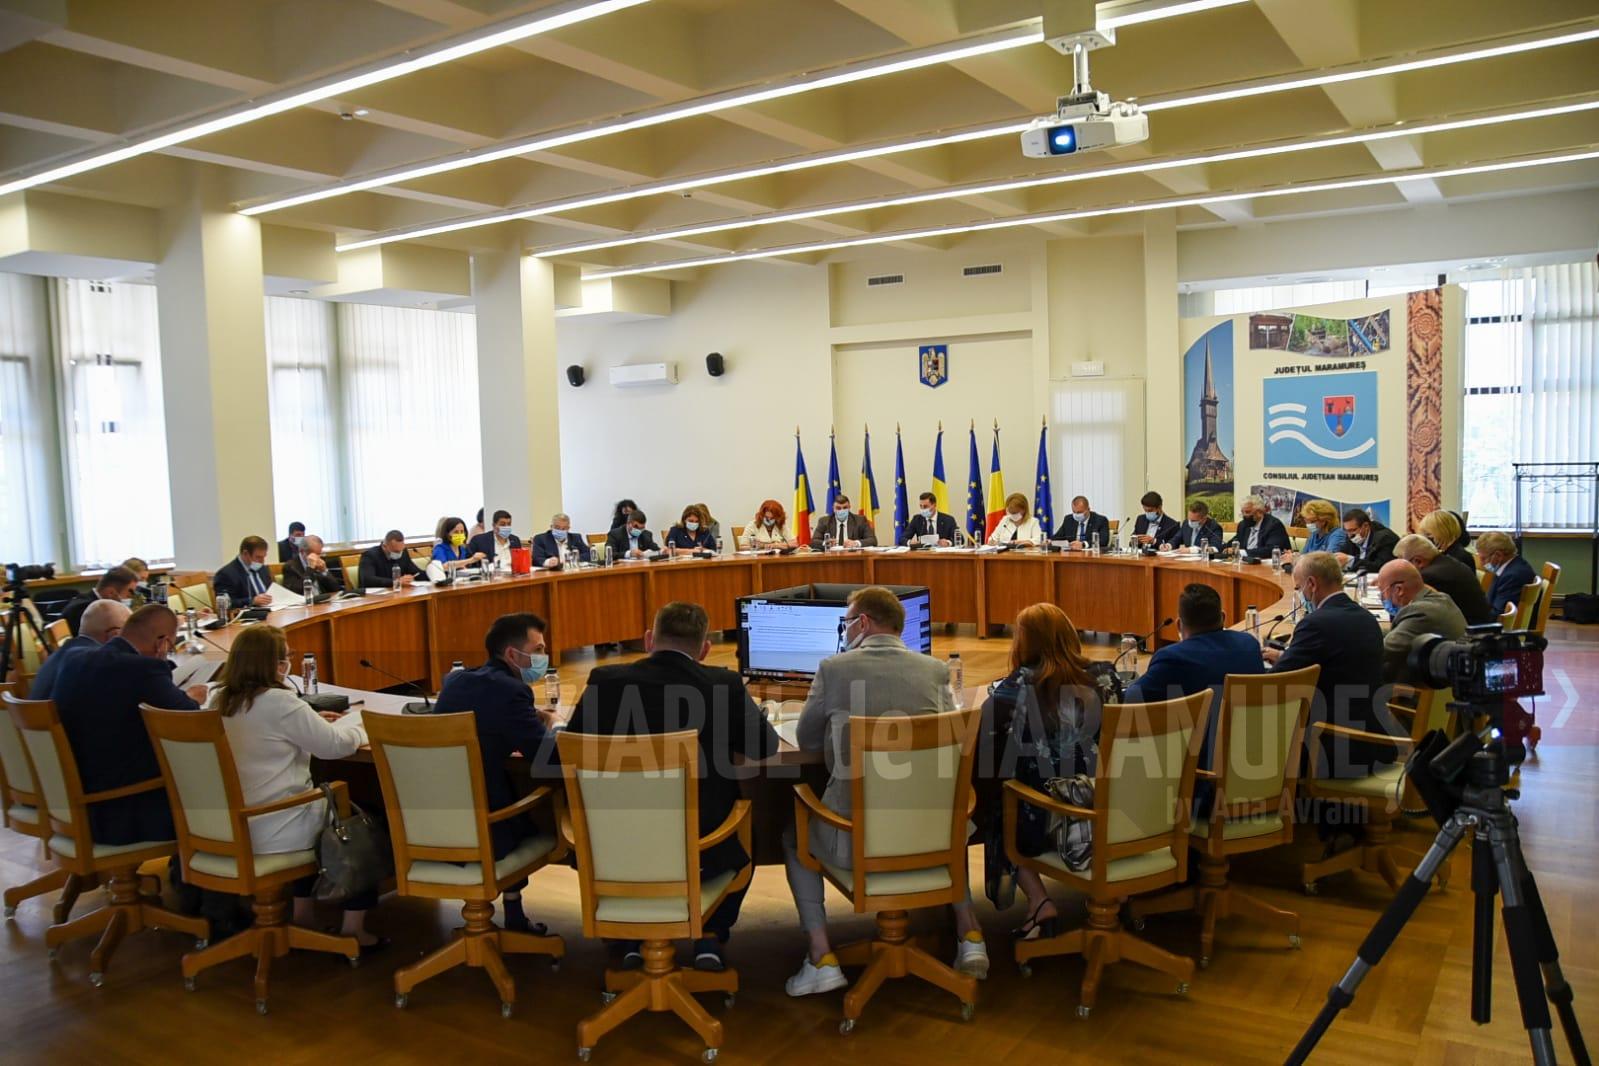 Consiliul Județean a acordat Anei Blandiana titlul de cetățean de onoare al județului Maramureș